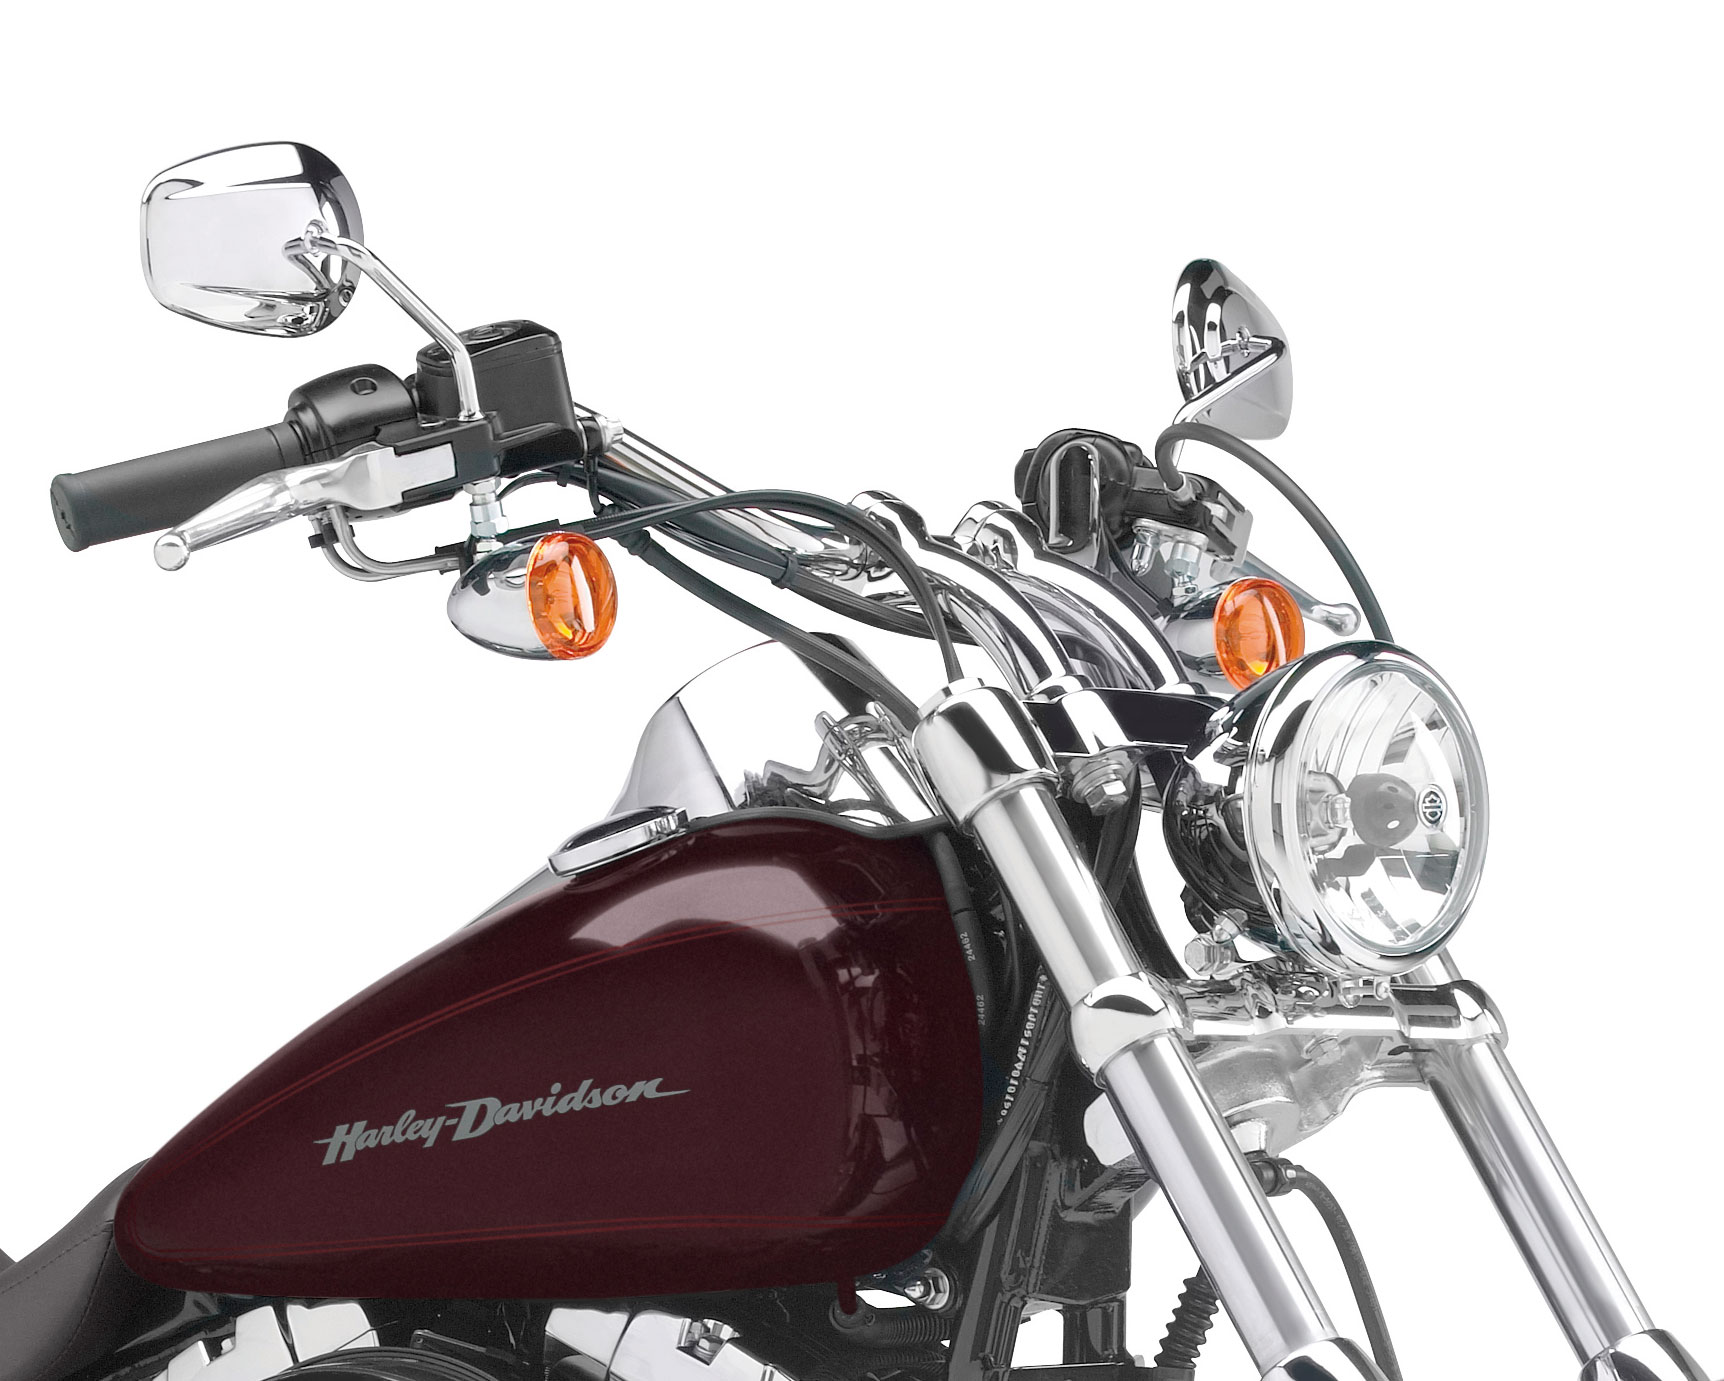 56188 00 Harley Davidson H D Original Handlebar For Softail Deuce 00 07 At Thunderbike Shop